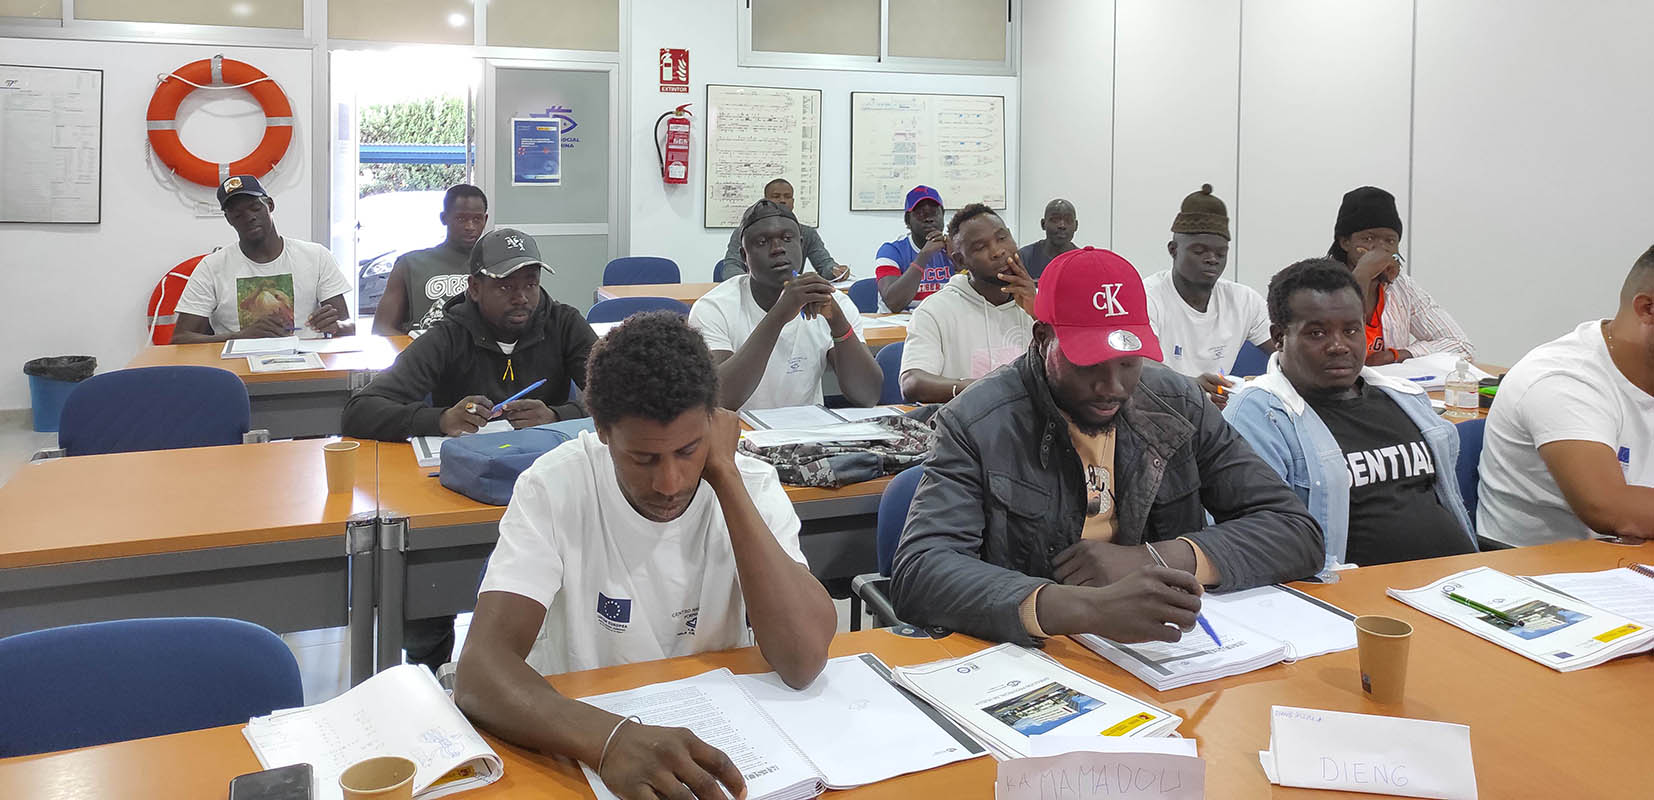 Grupo de senegaleses en el curso de formación del ISM de Huelva para conseguir regularizar su situación